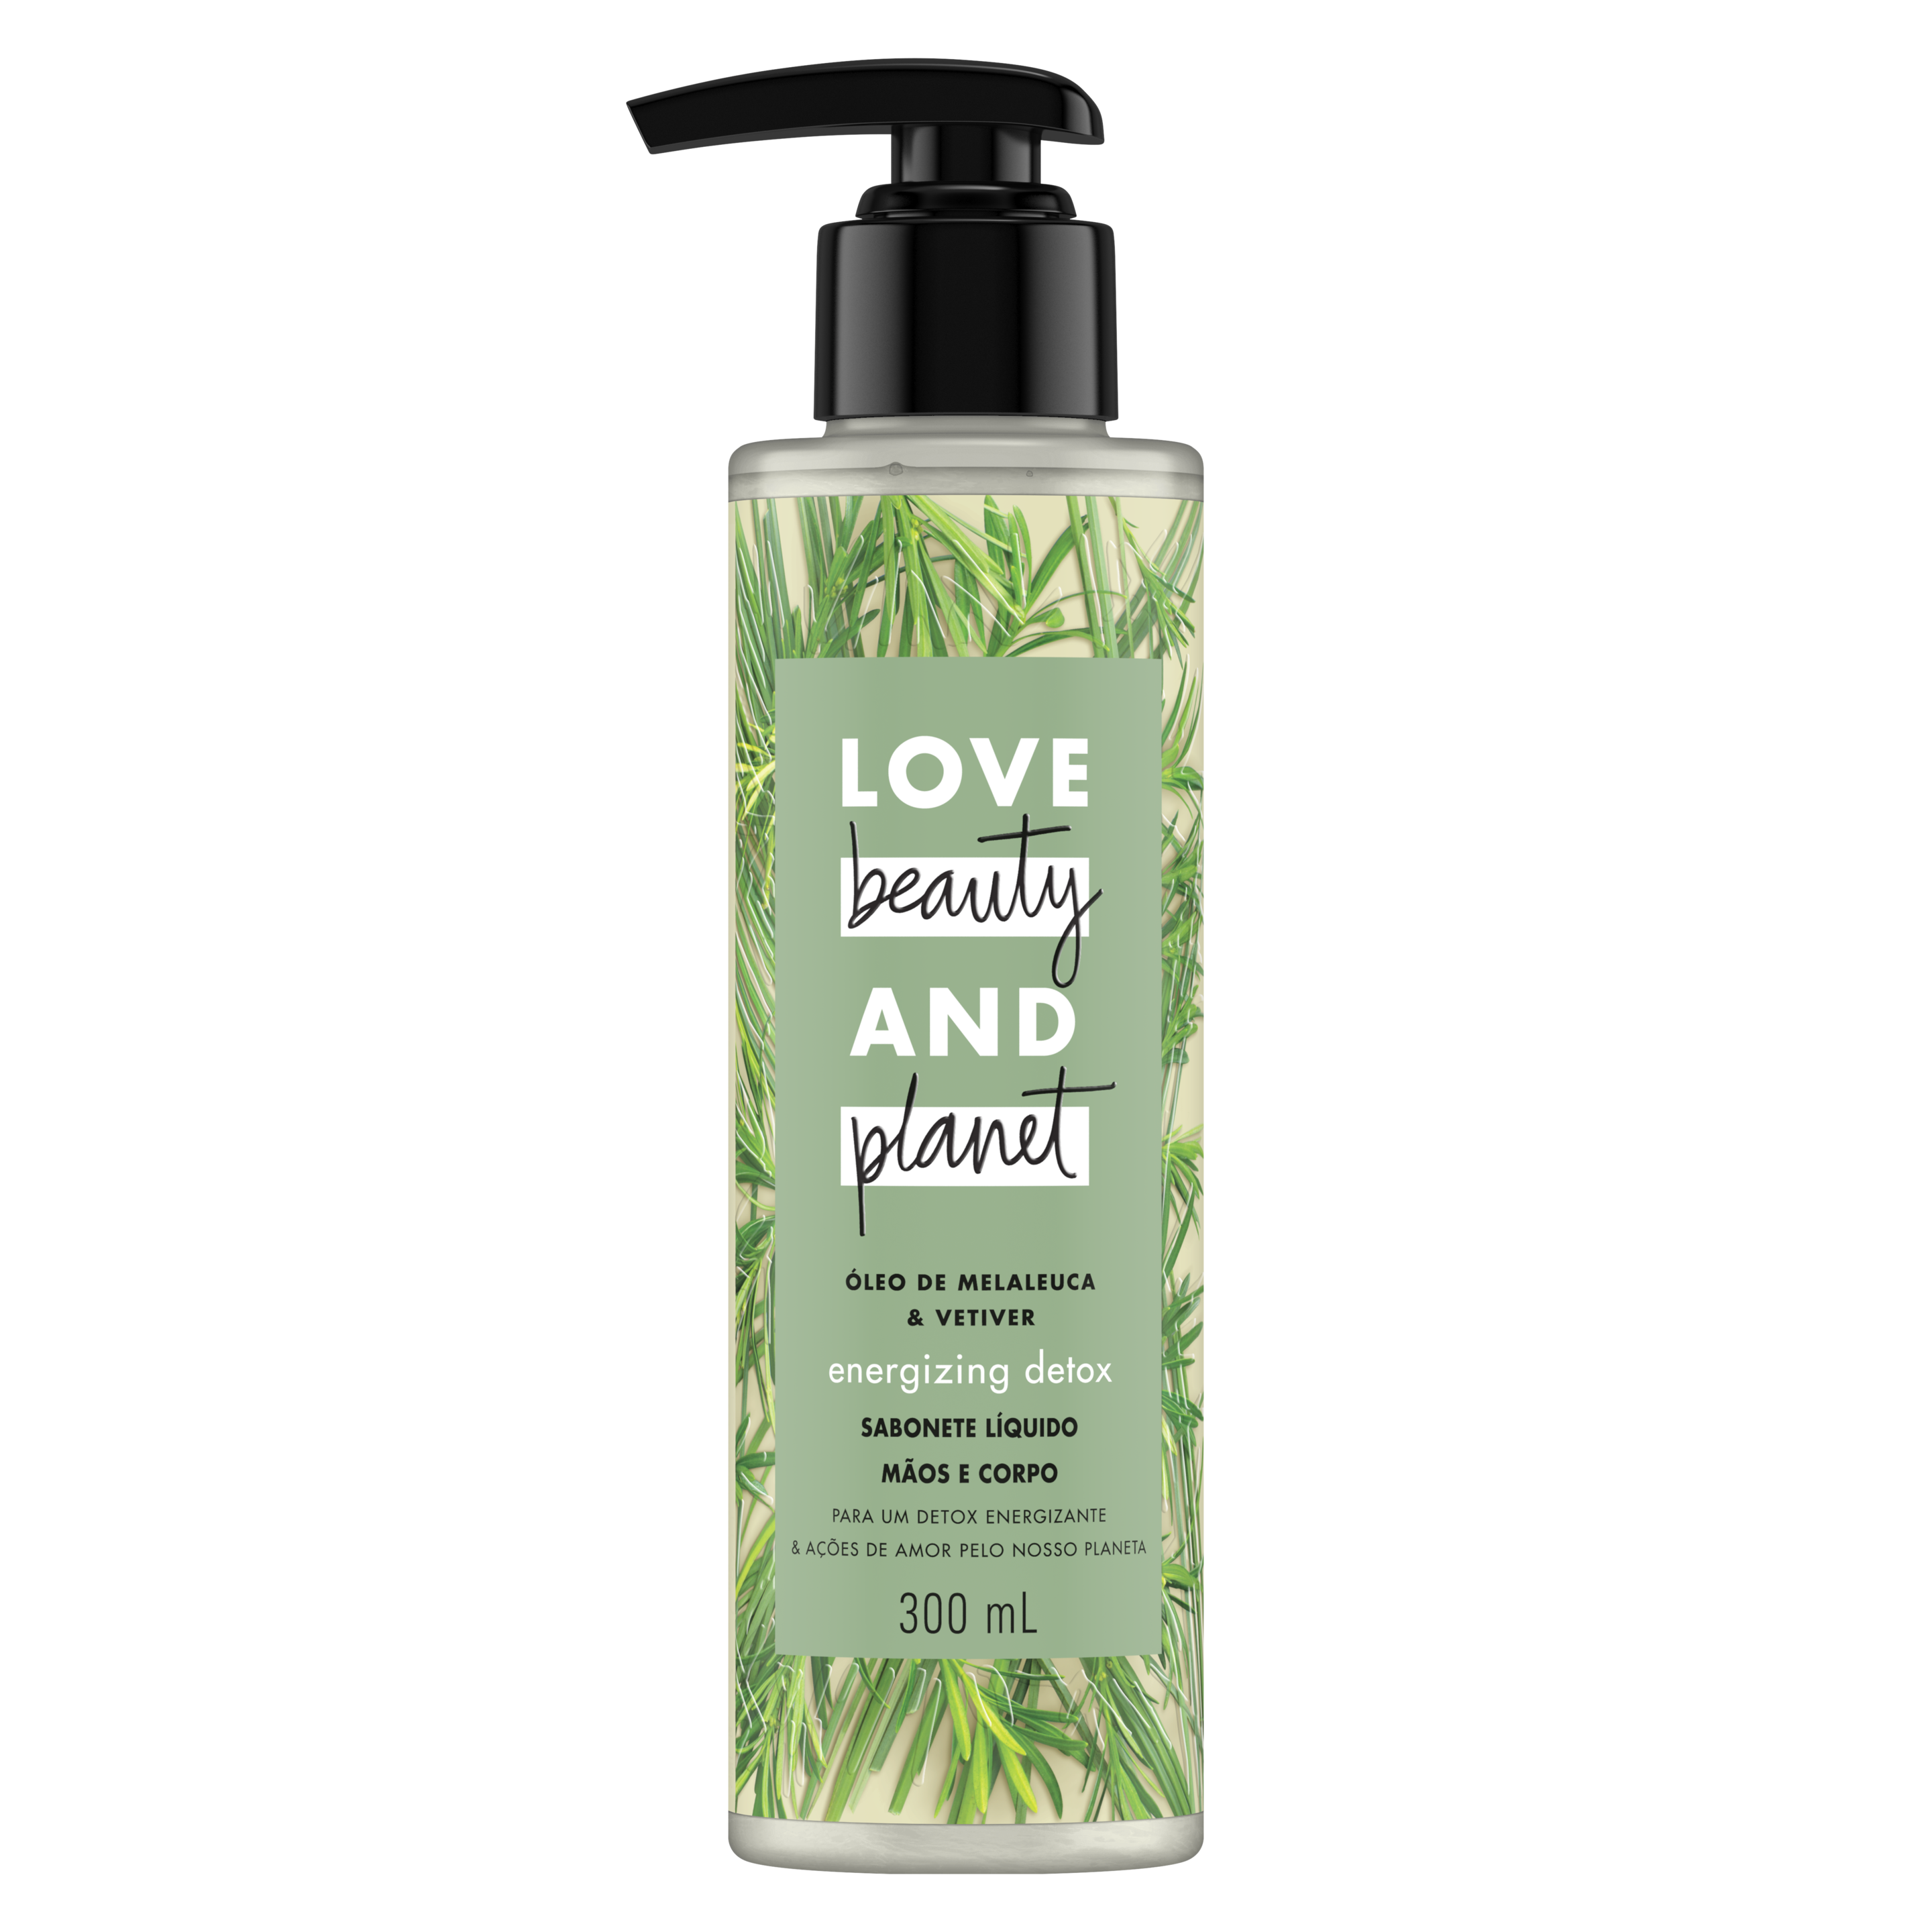 Frente da embalagem do sabonete líquido para o corpo e mãos Love Beauty and Planet óleo de melaleuca & vetiver 300 ml